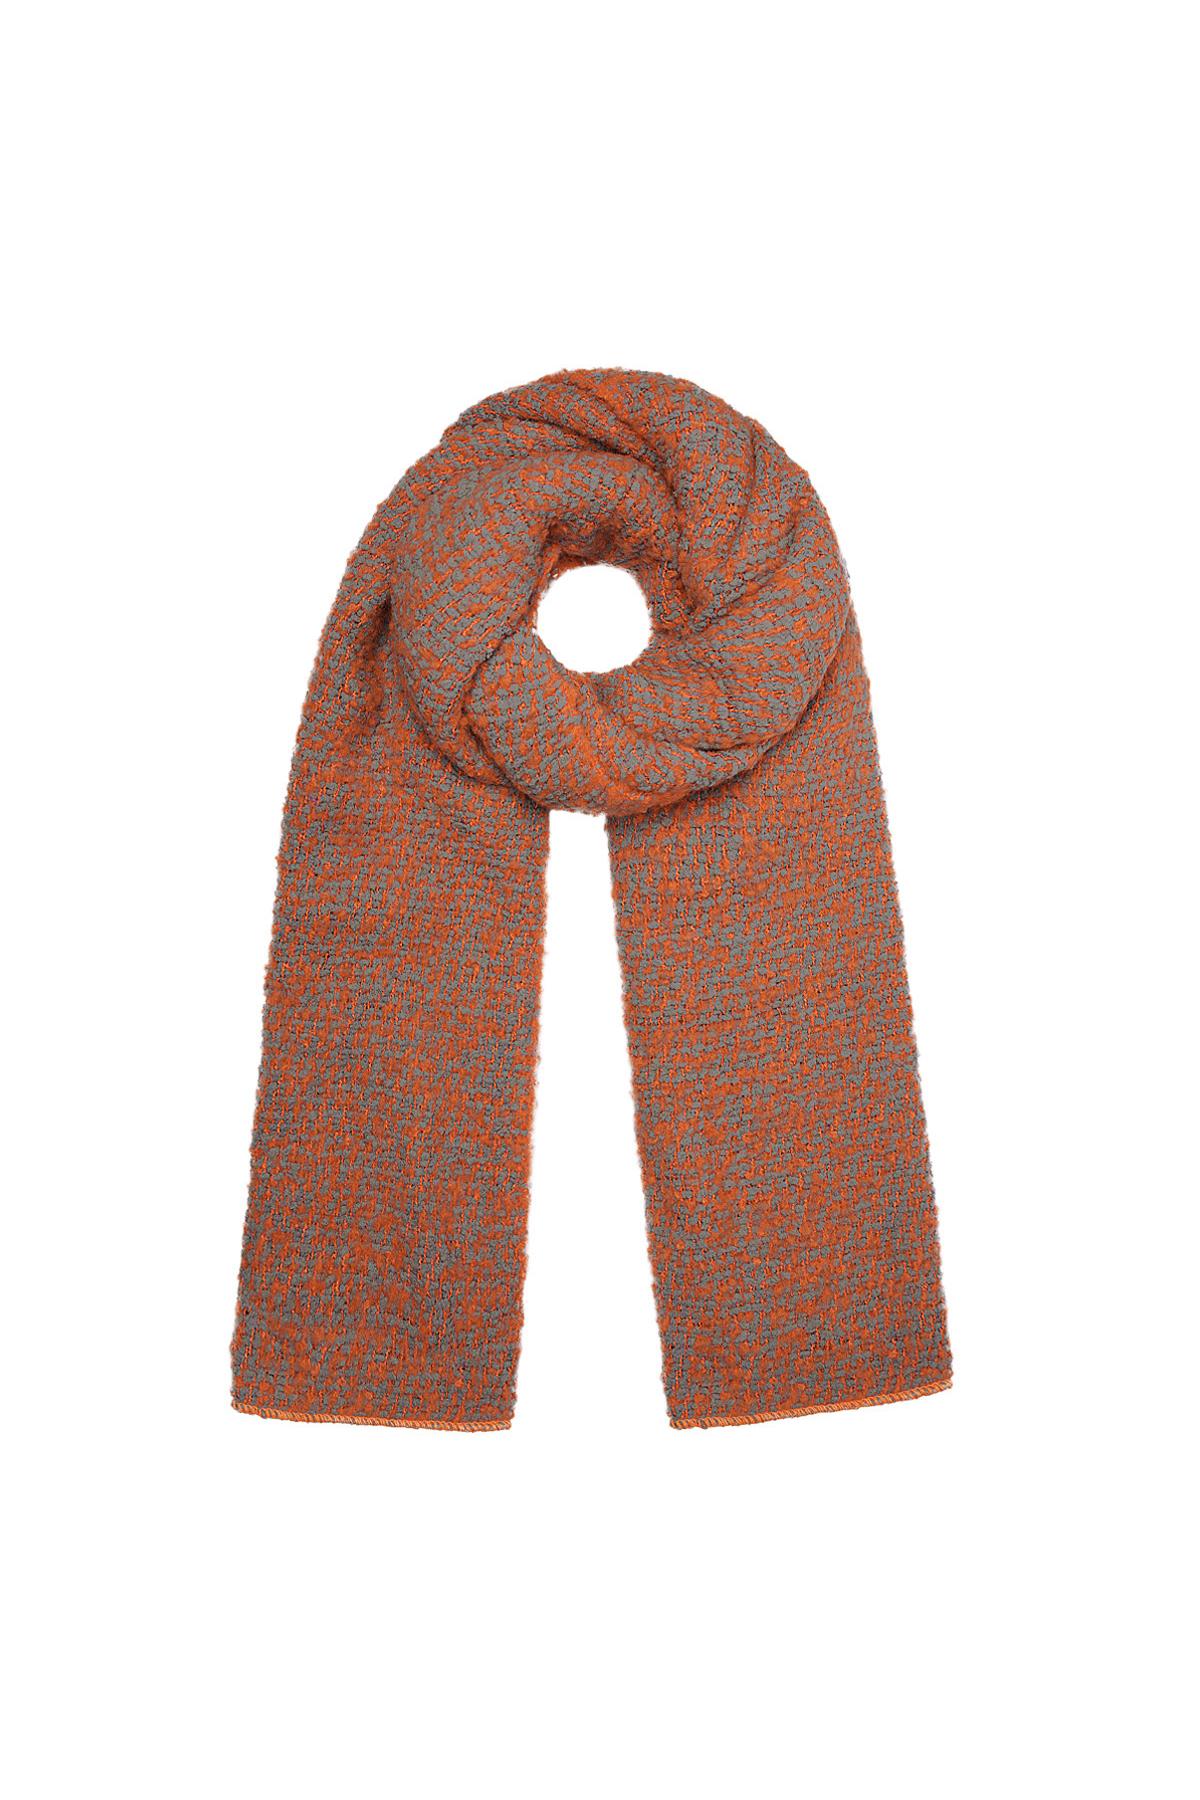 Sjaal met reliëf stof oranje/grijs Polyester 